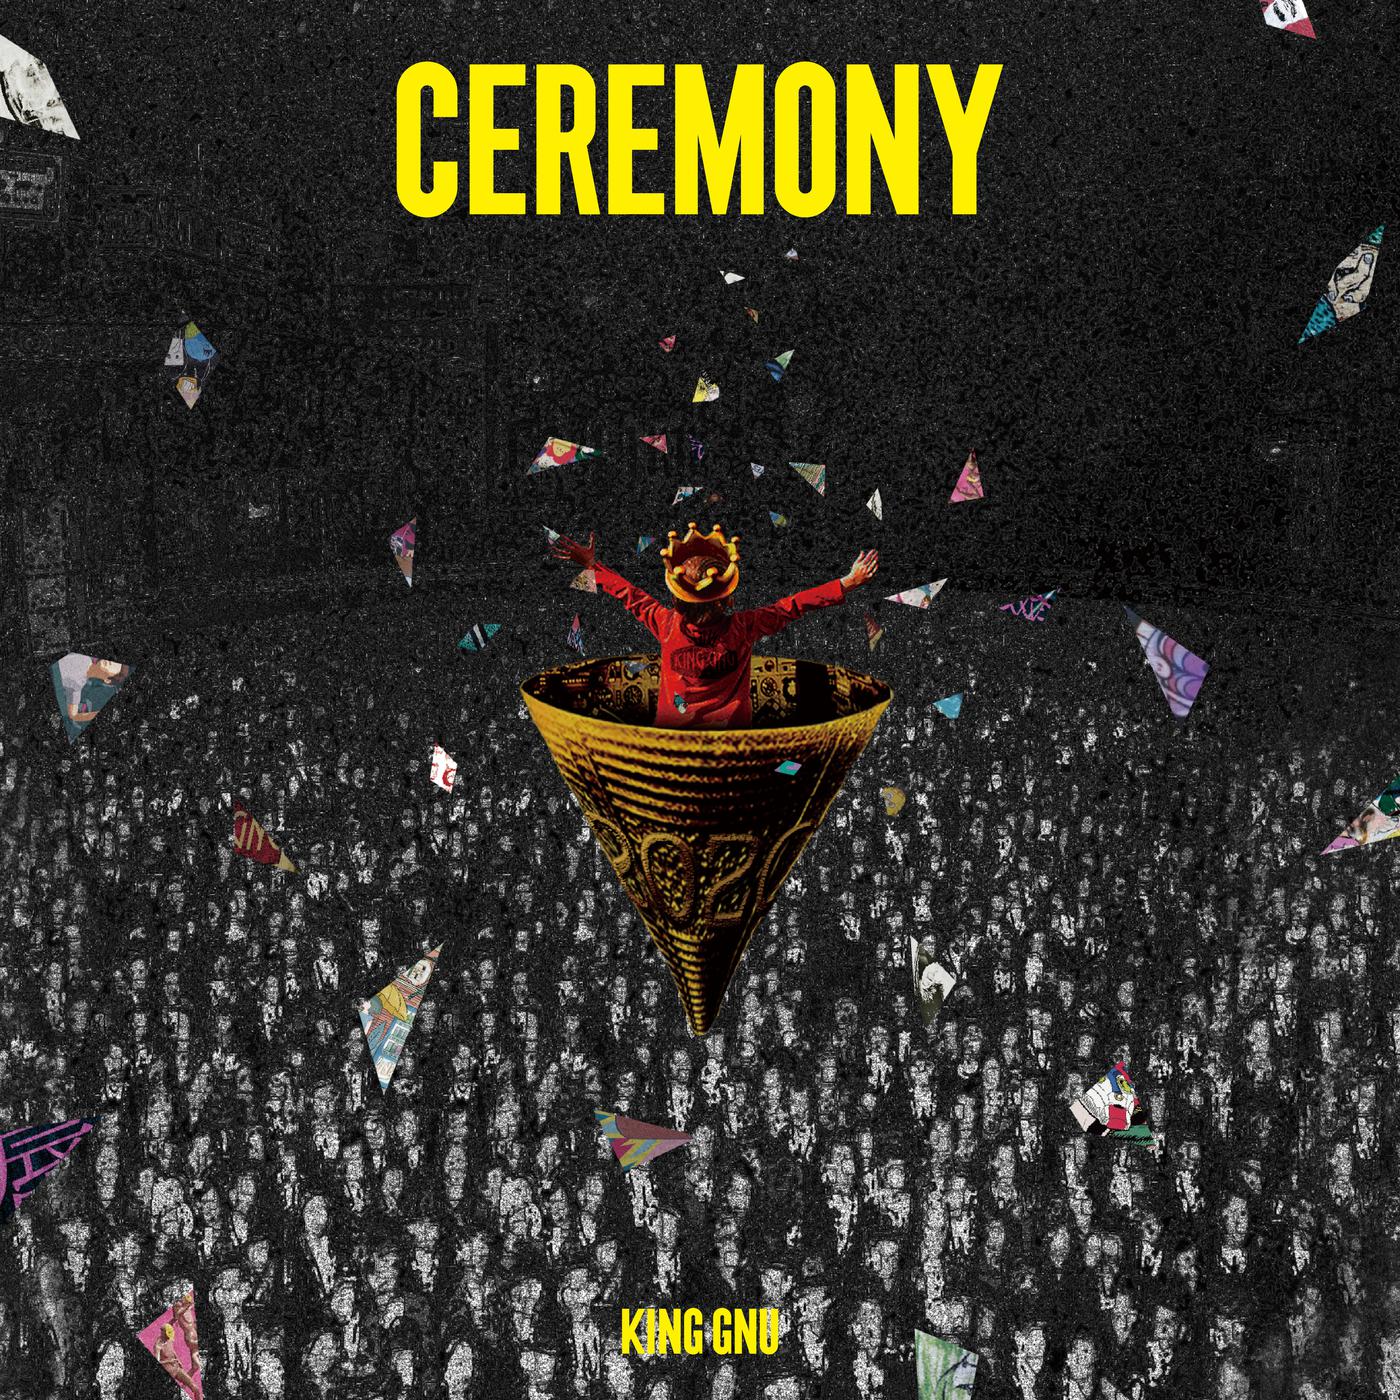 壇上歌词 歌手King Gnu-专辑CEREMONY-单曲《壇上》LRC歌词下载